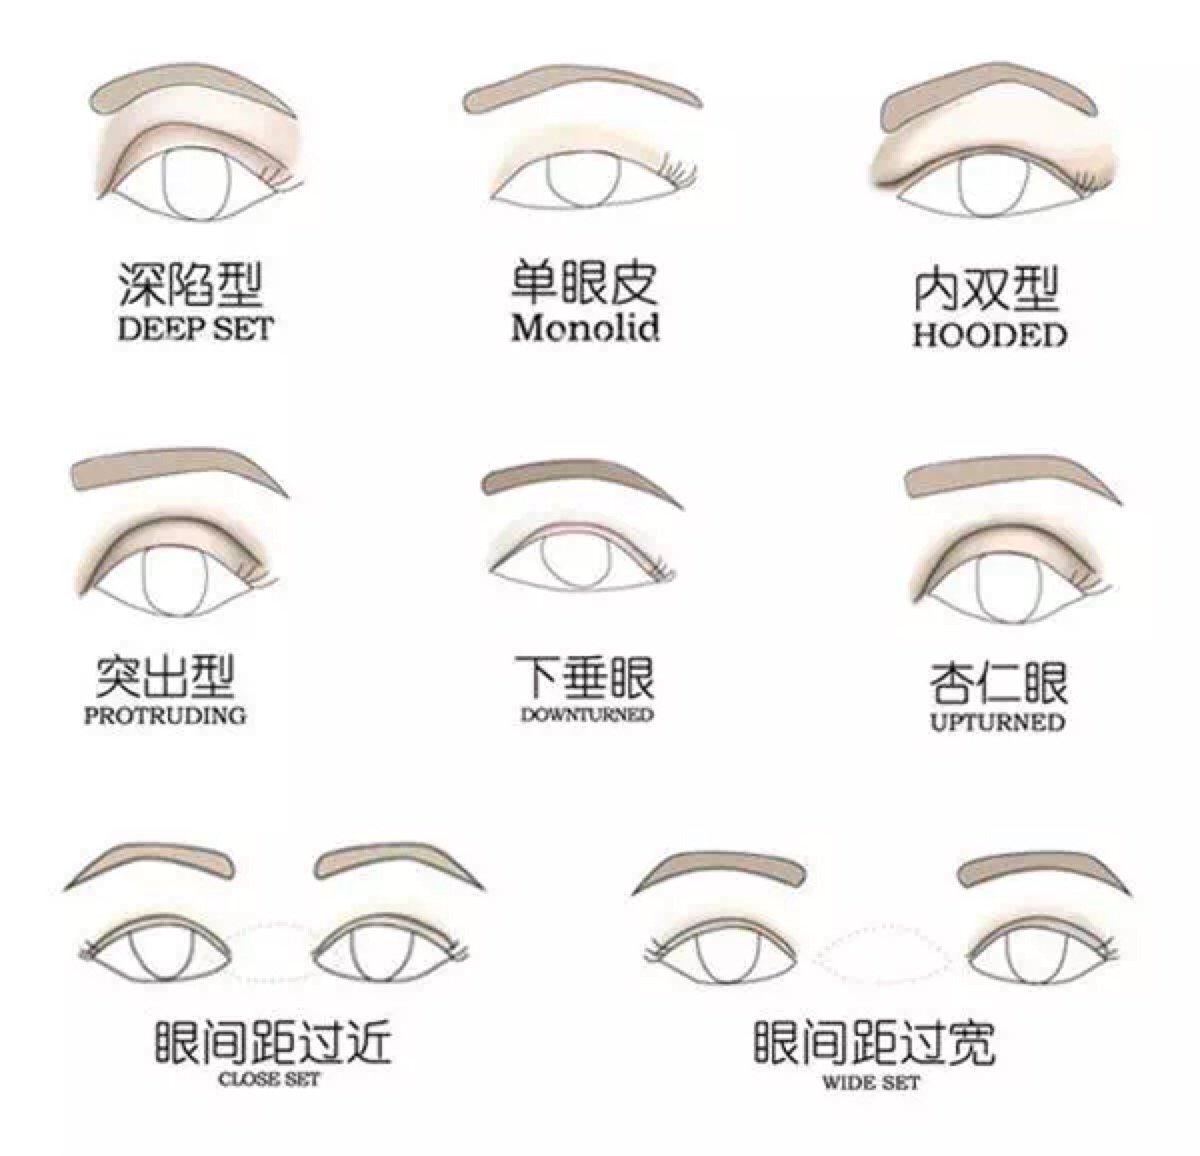 不同眼睛类型 眼影该怎么画